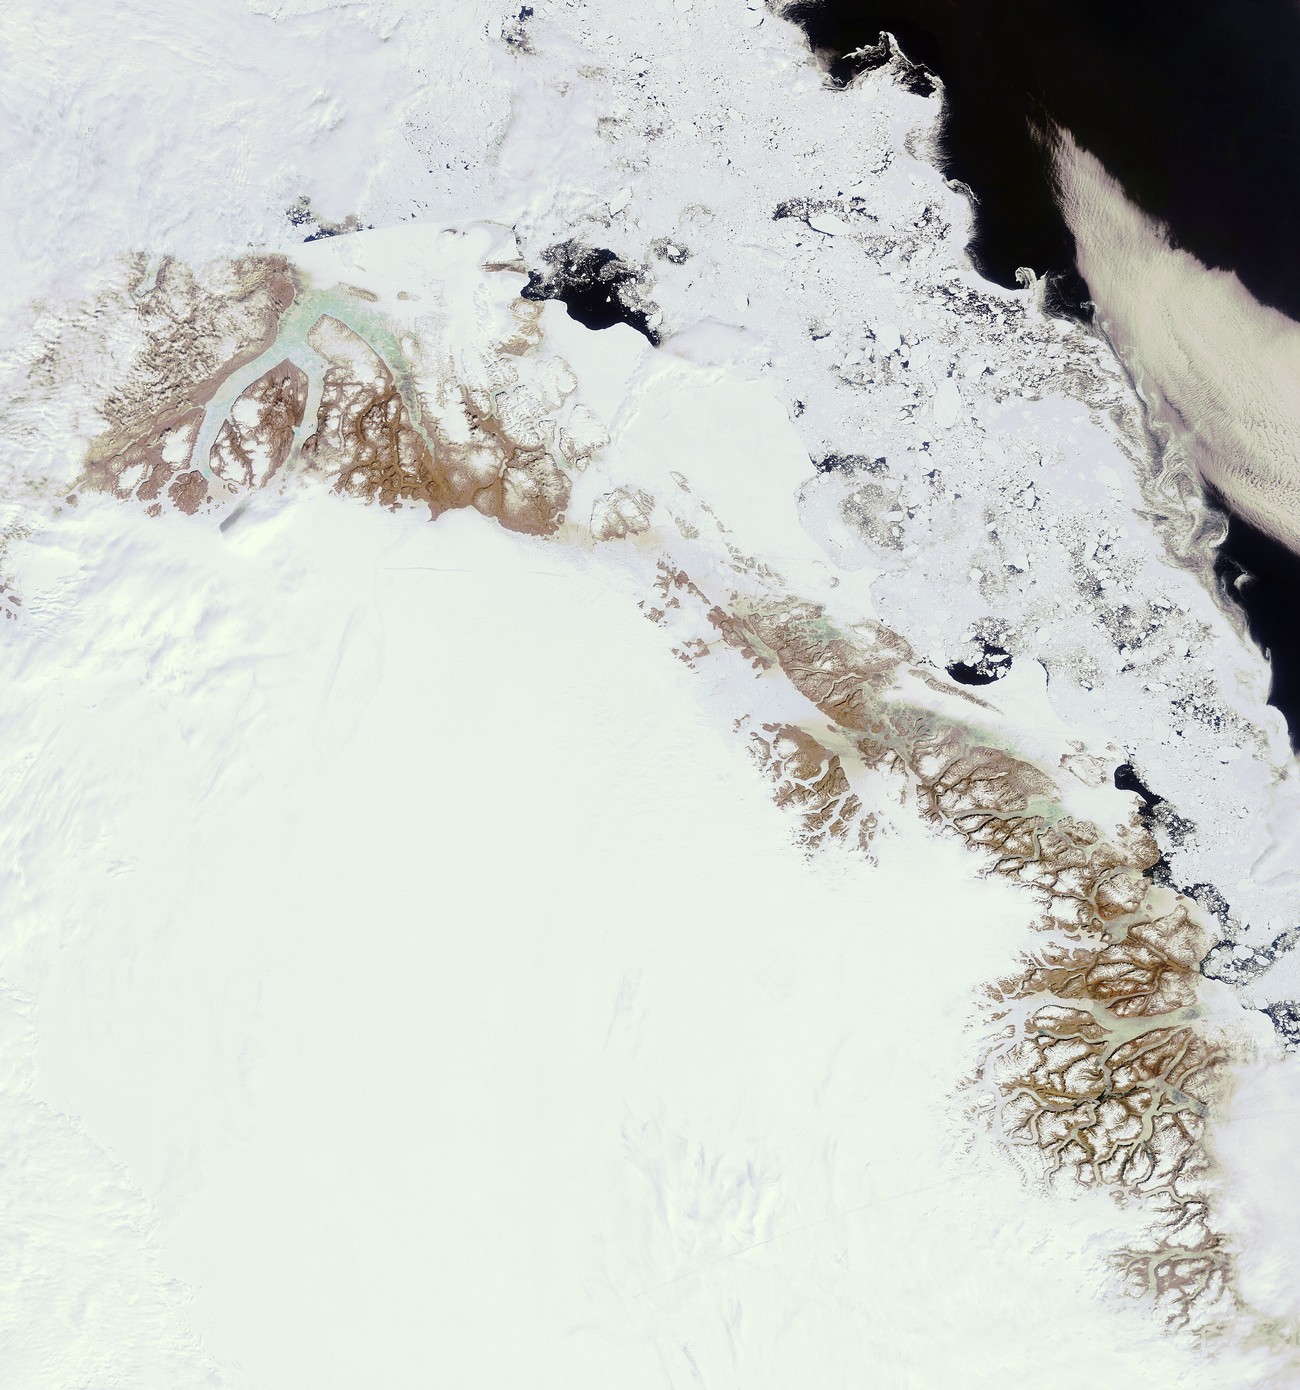 Cette image de la calotte glaciaire nord a été prise le 23 juin par la caméra Meris (Medium Resolution Imaging Spectrometer) du satellite Envisat avec une résolution de 300 mètres. © Esa  

